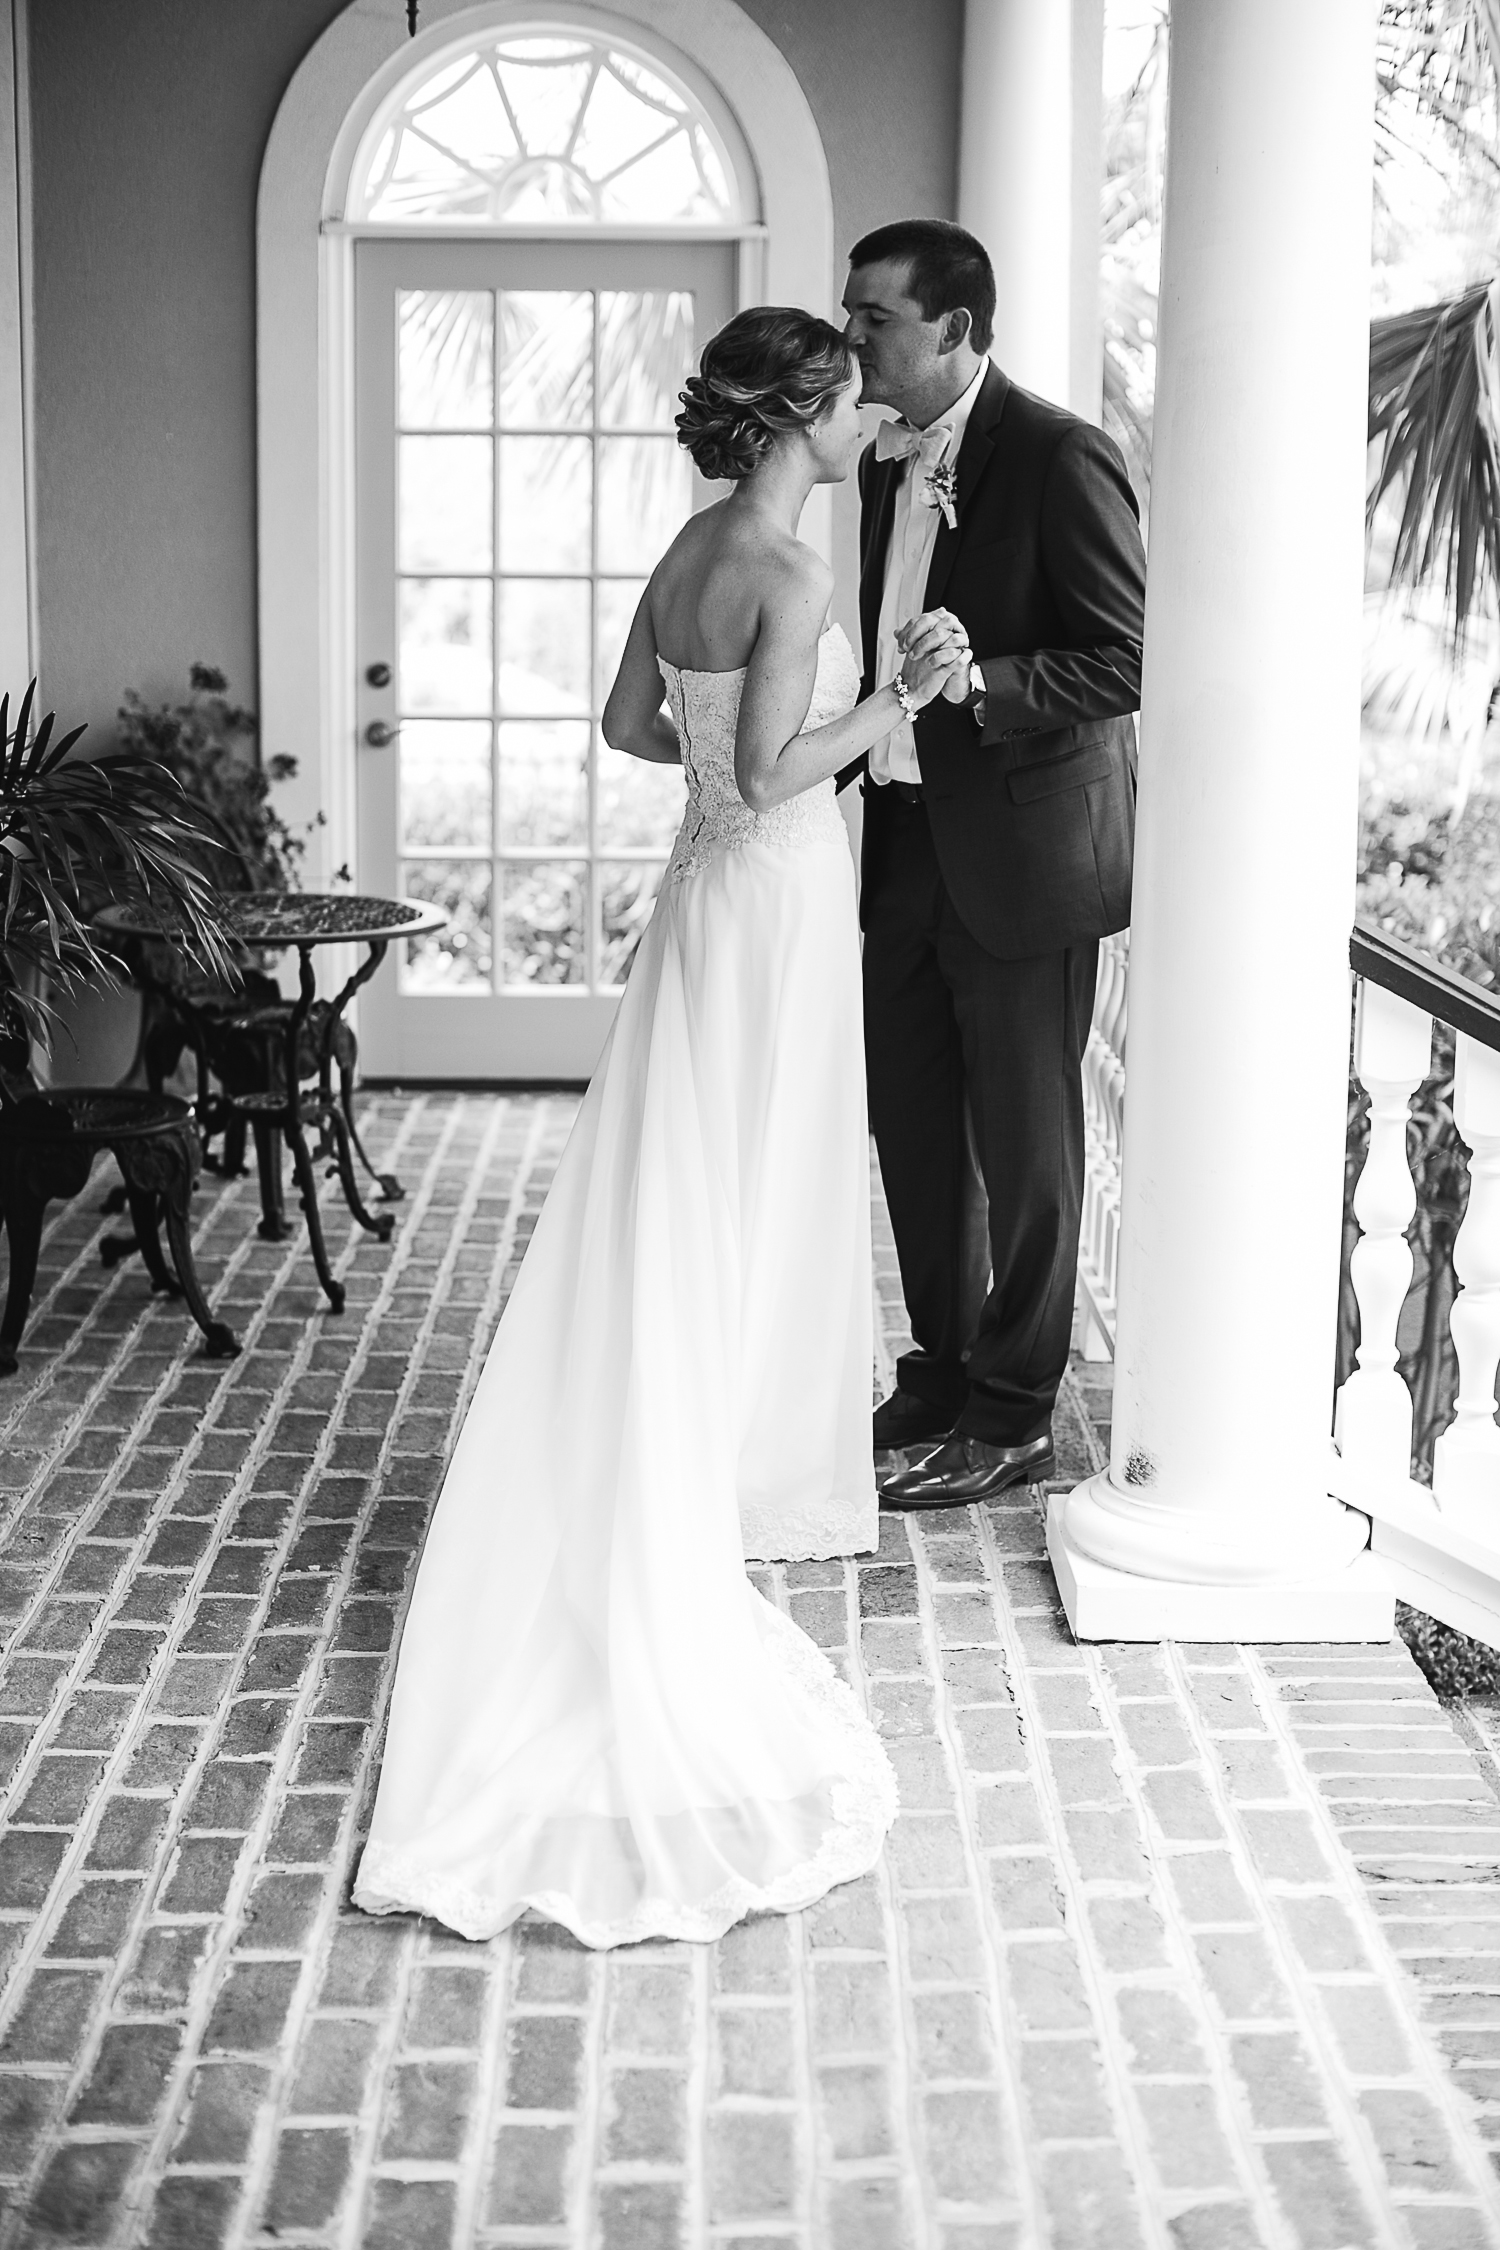 Wilmington NC Outdoor Wedding:  Lauren + Lars - photo by Eric Boneske | https://emmalinebride.com/real-weddings/wilmington-nc-outdoor-wedding/